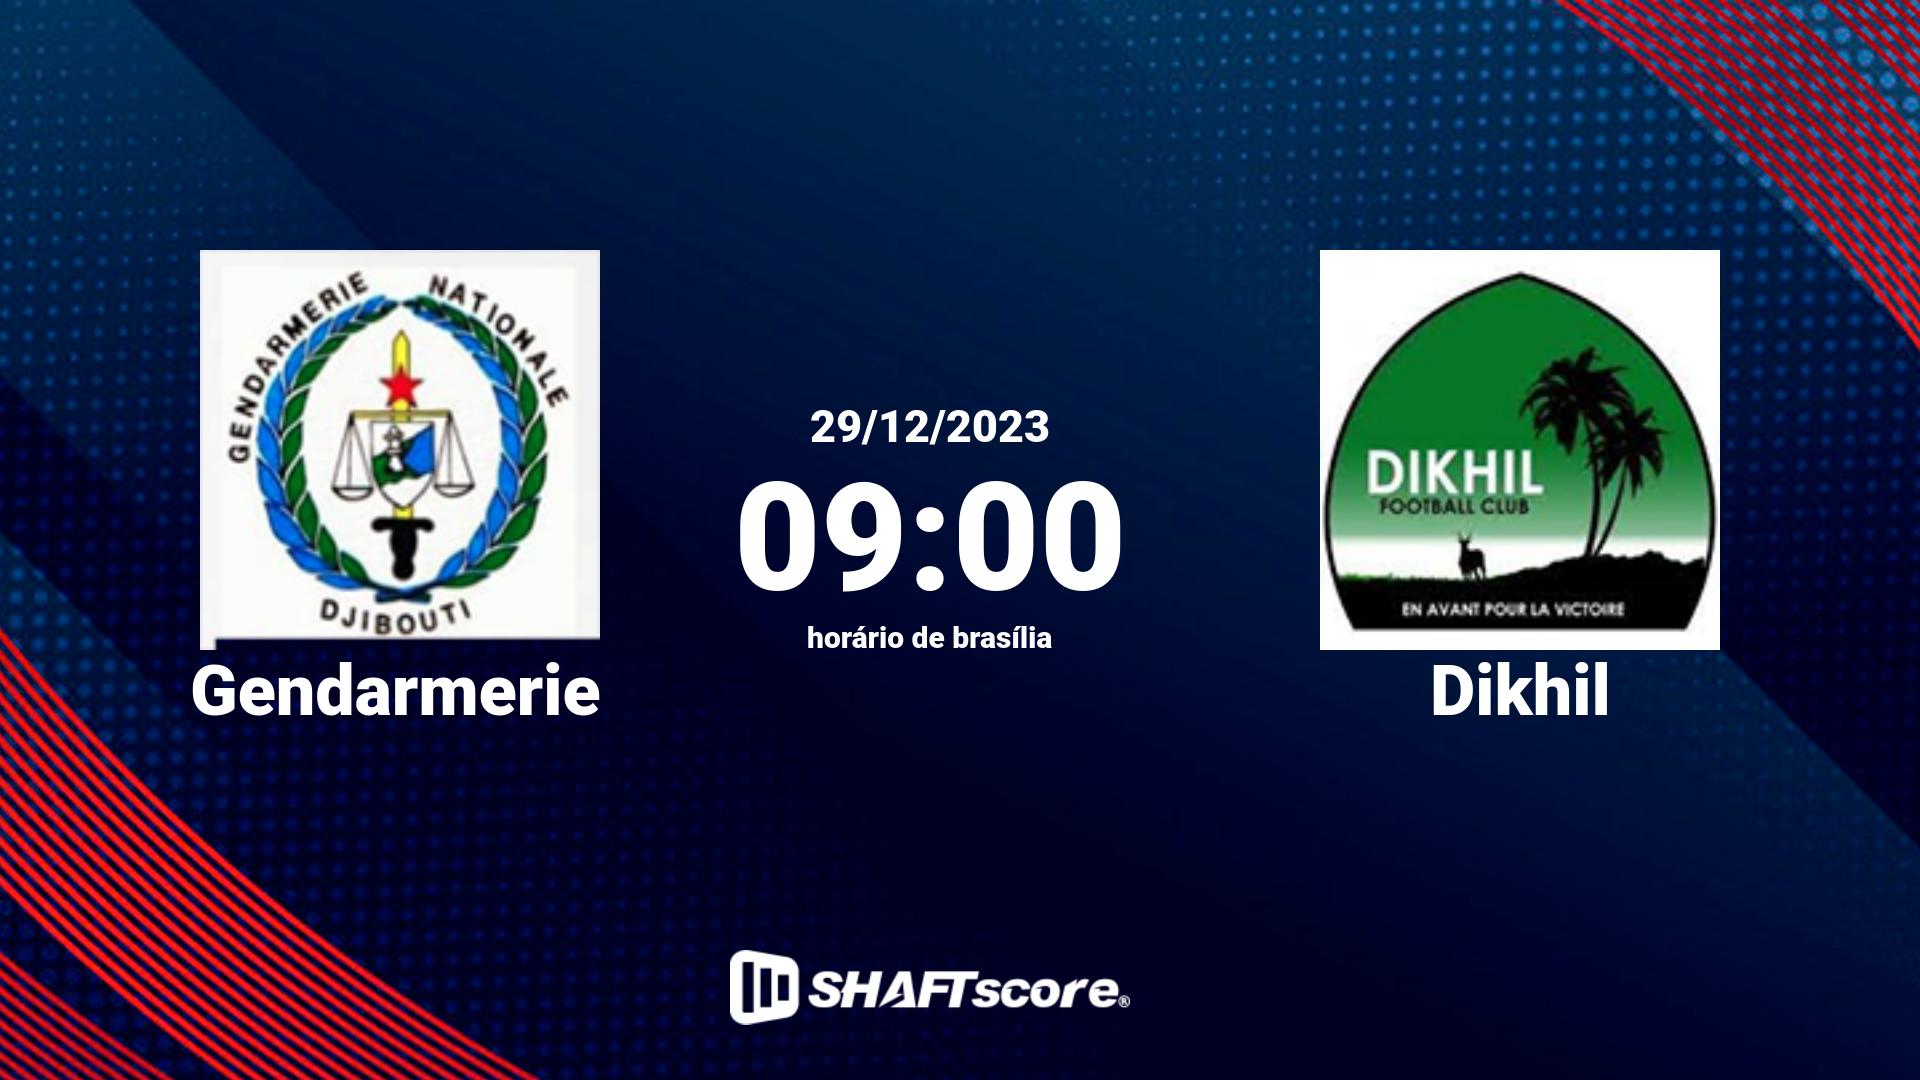 Estatísticas do jogo Gendarmerie vs Dikhil 29.12 09:00